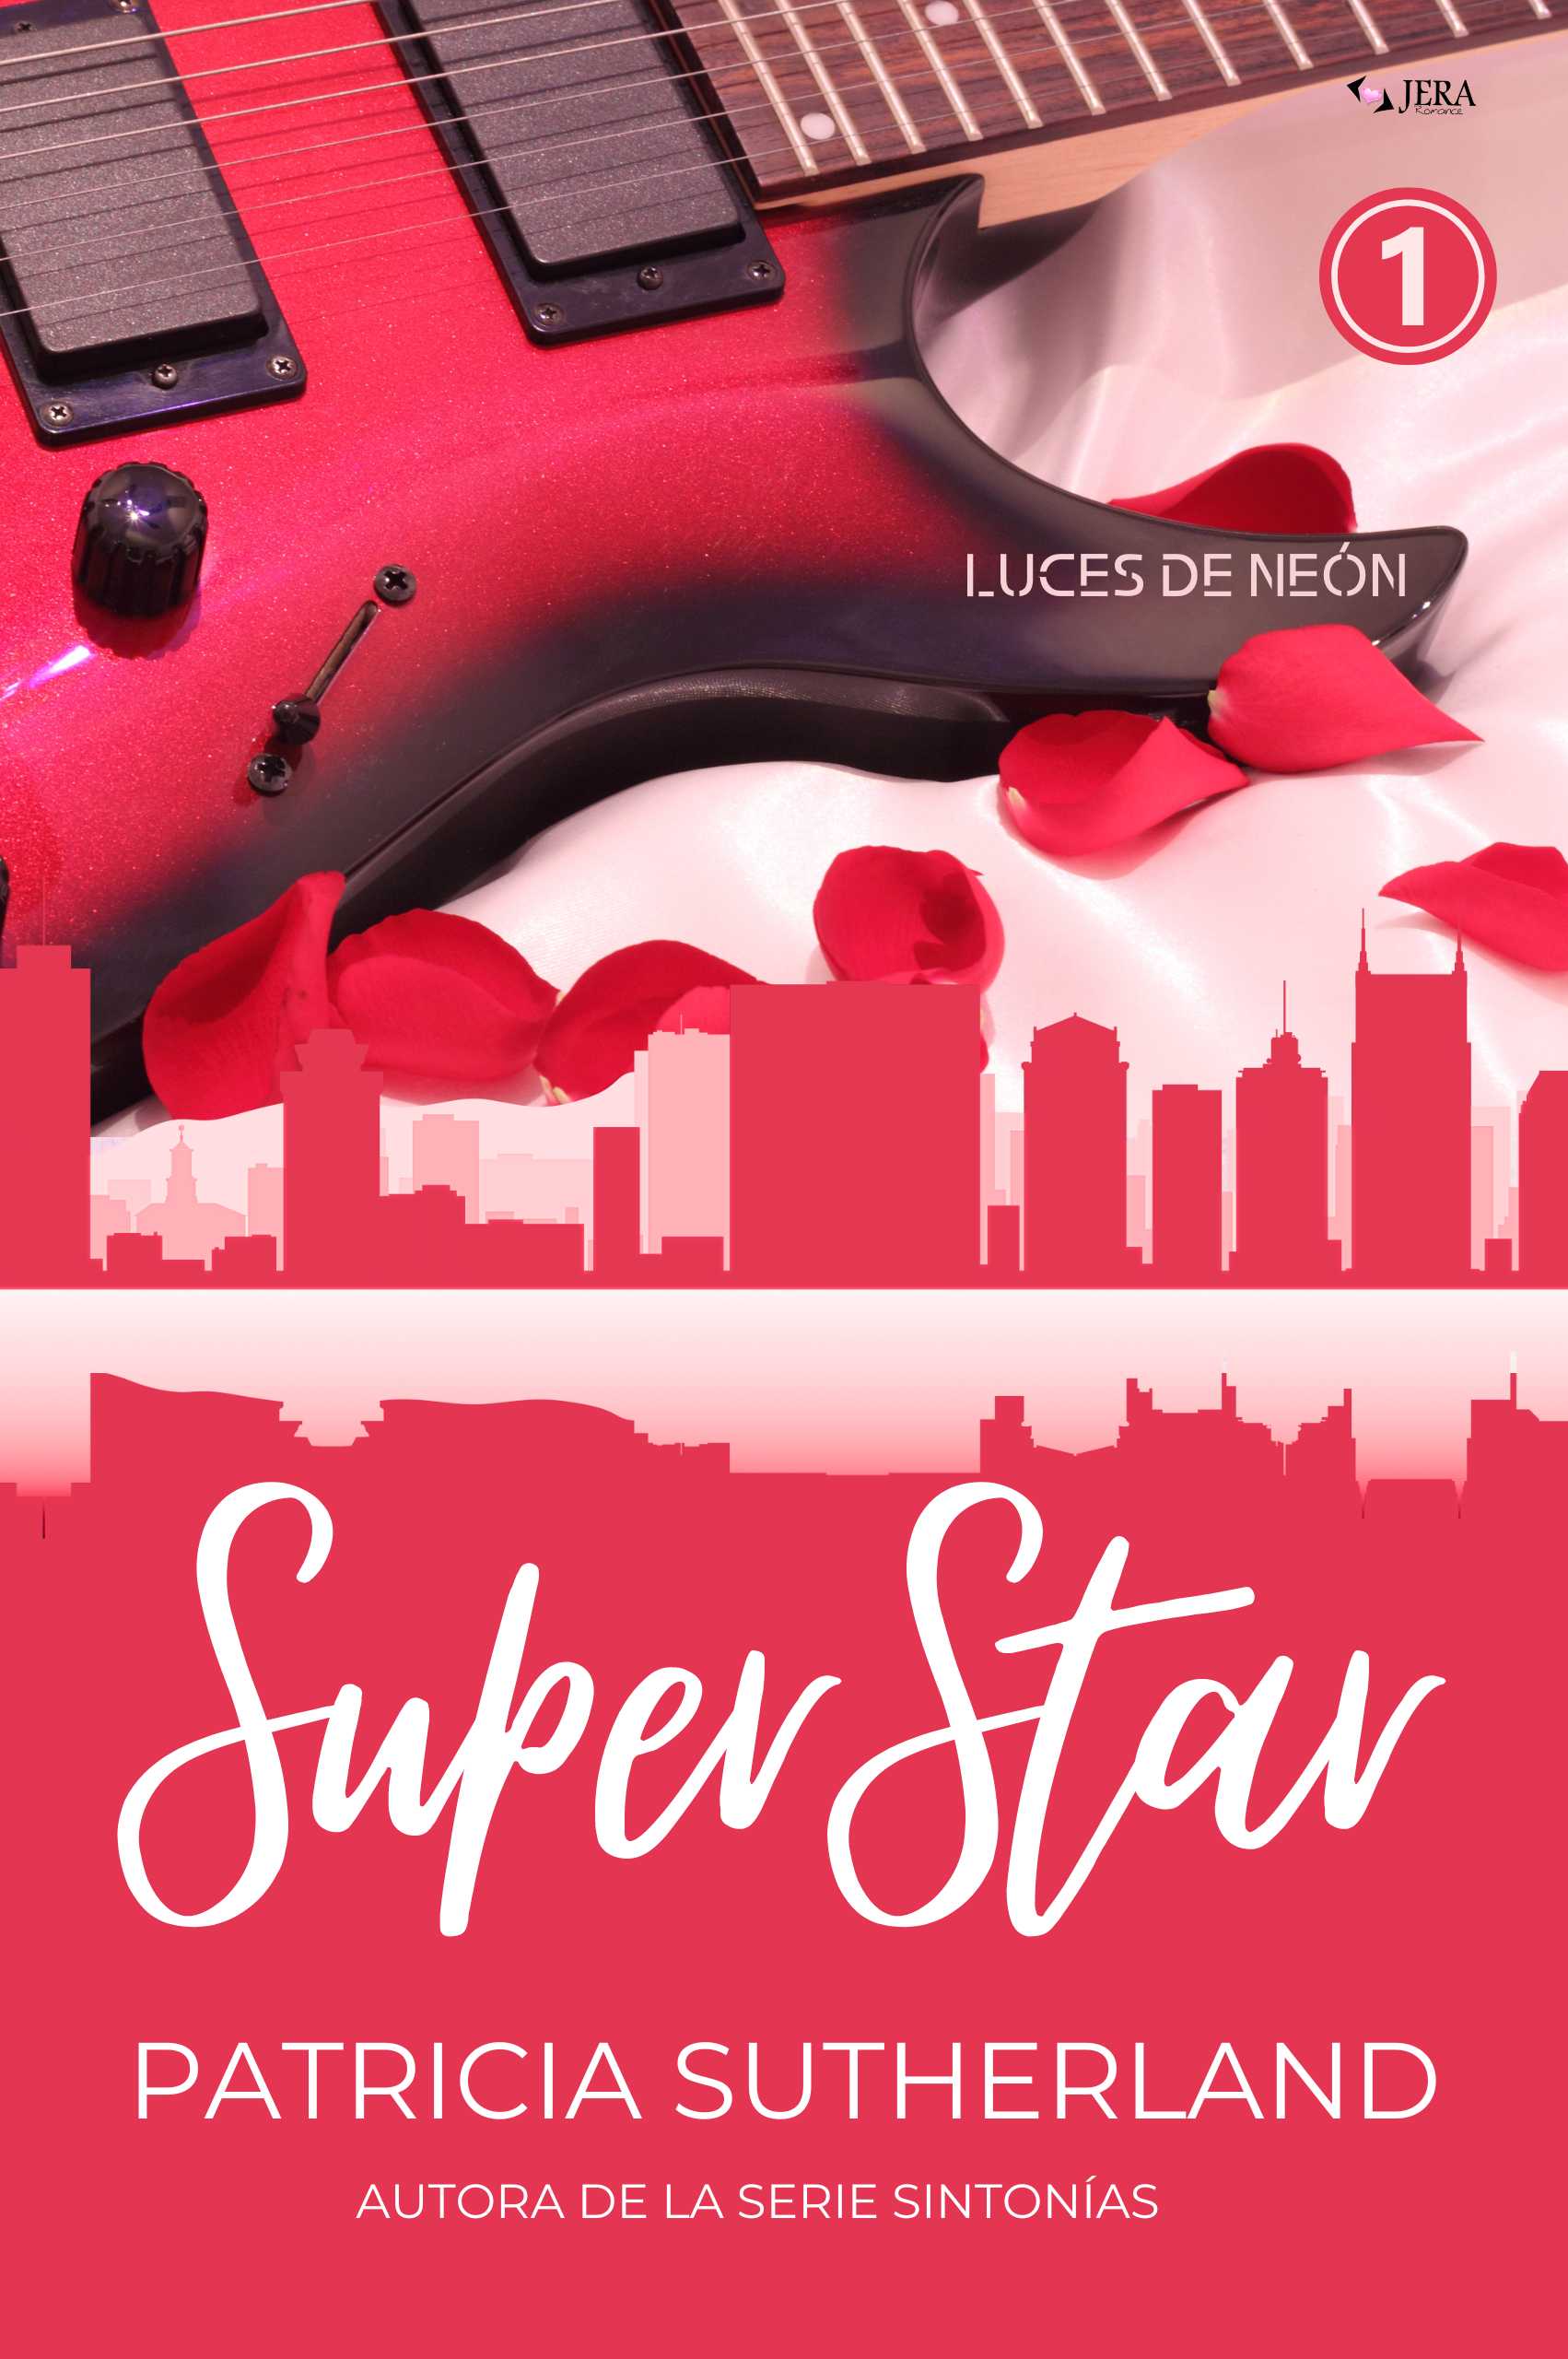 SUPERSTAR. Parte 1, la primera entrega de la nueva serie romántica de Patricia Sutherland, Luces de Neón.